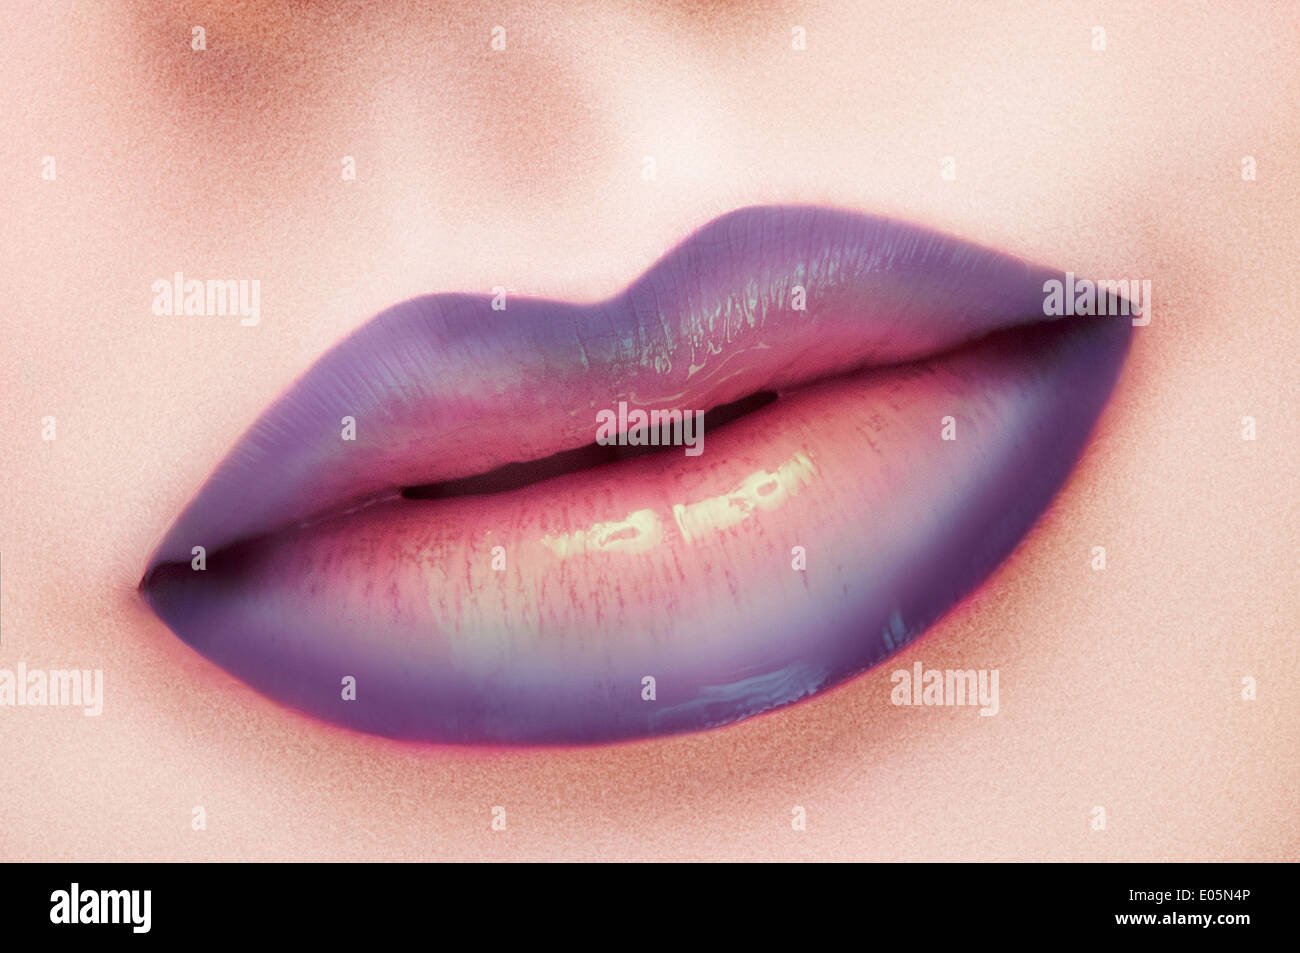 closeup cosmetic makeup shot of lips Stock Photo